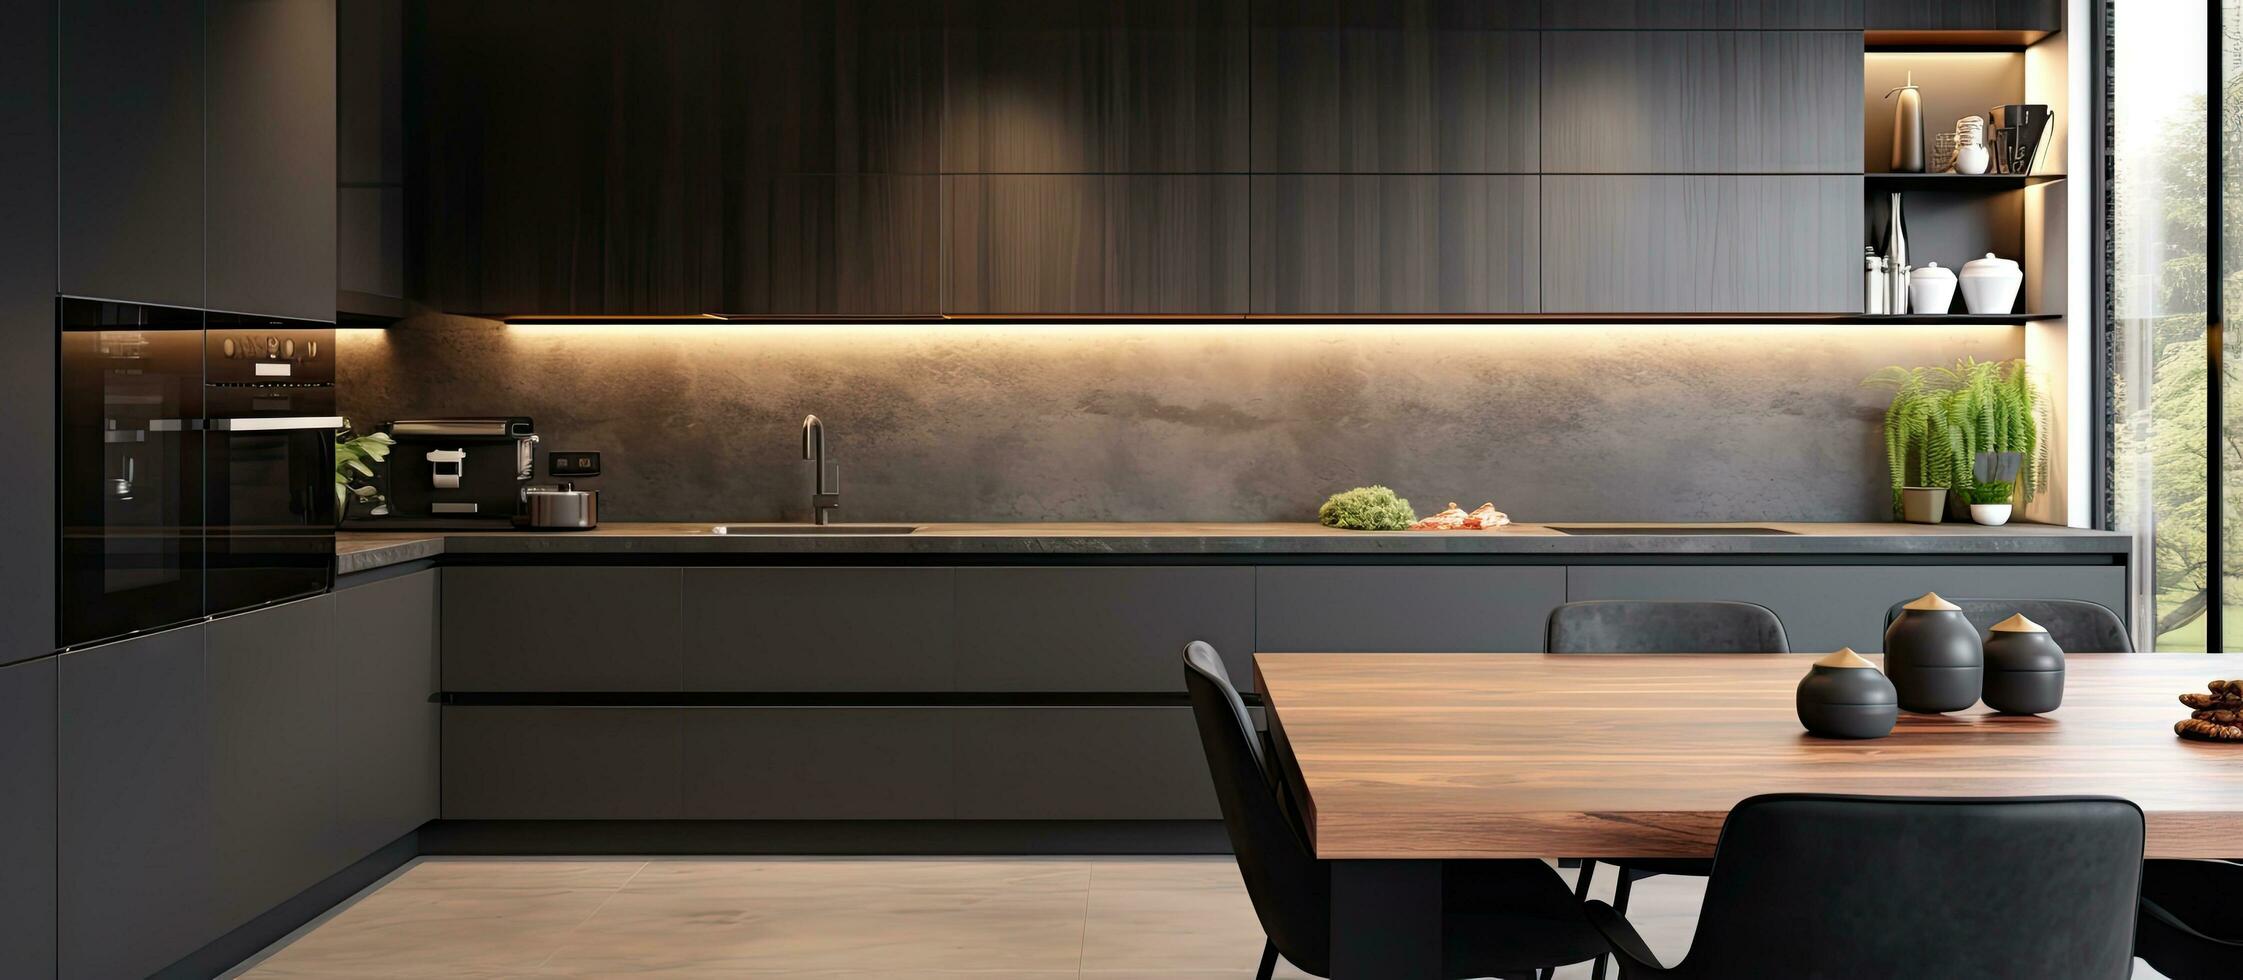 luxuoso e moderno cozinha interior foto